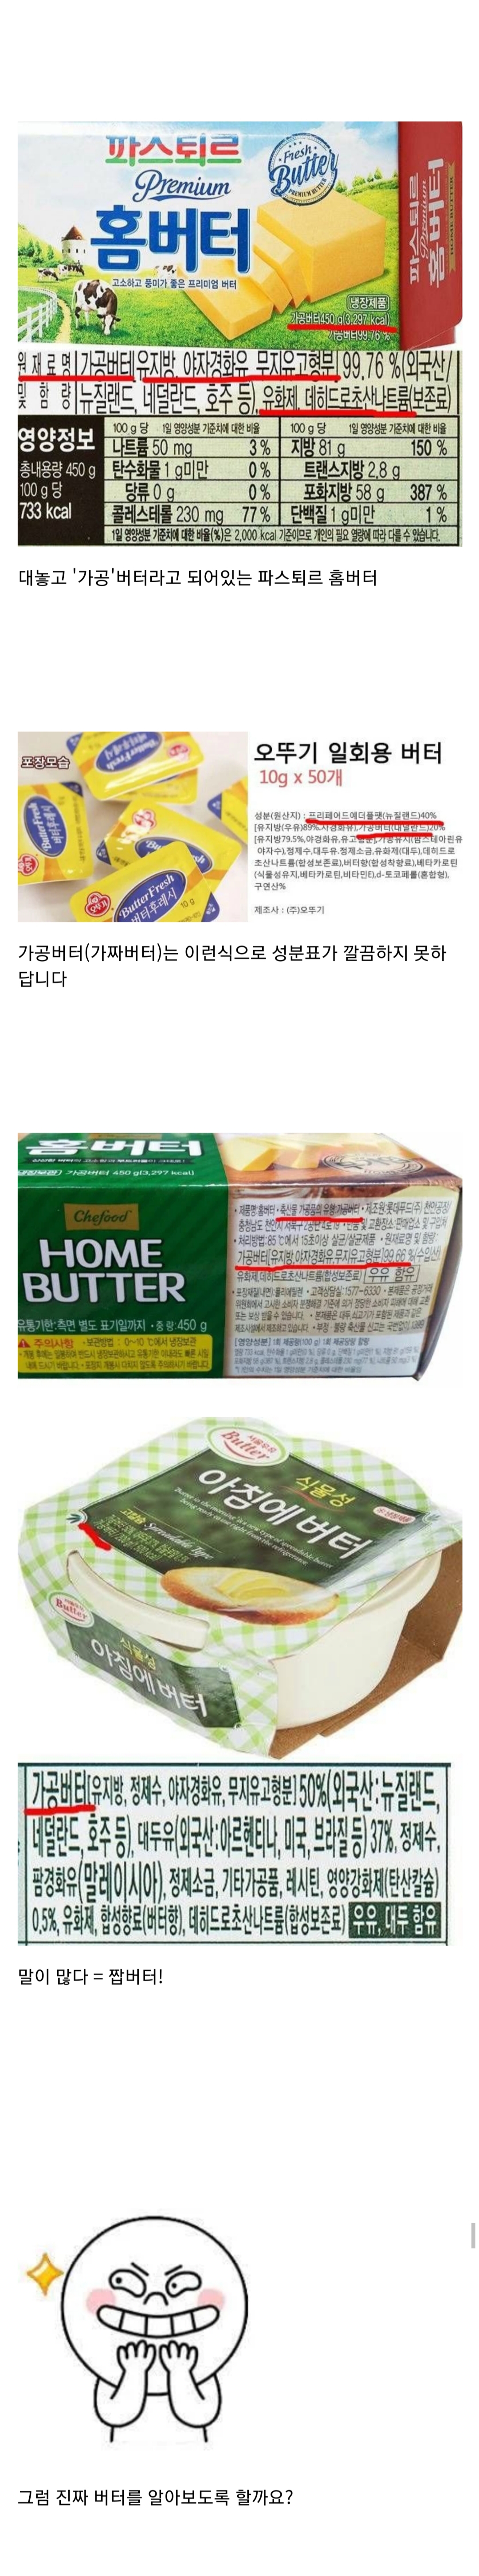 의외로 모르는 버터의 비밀